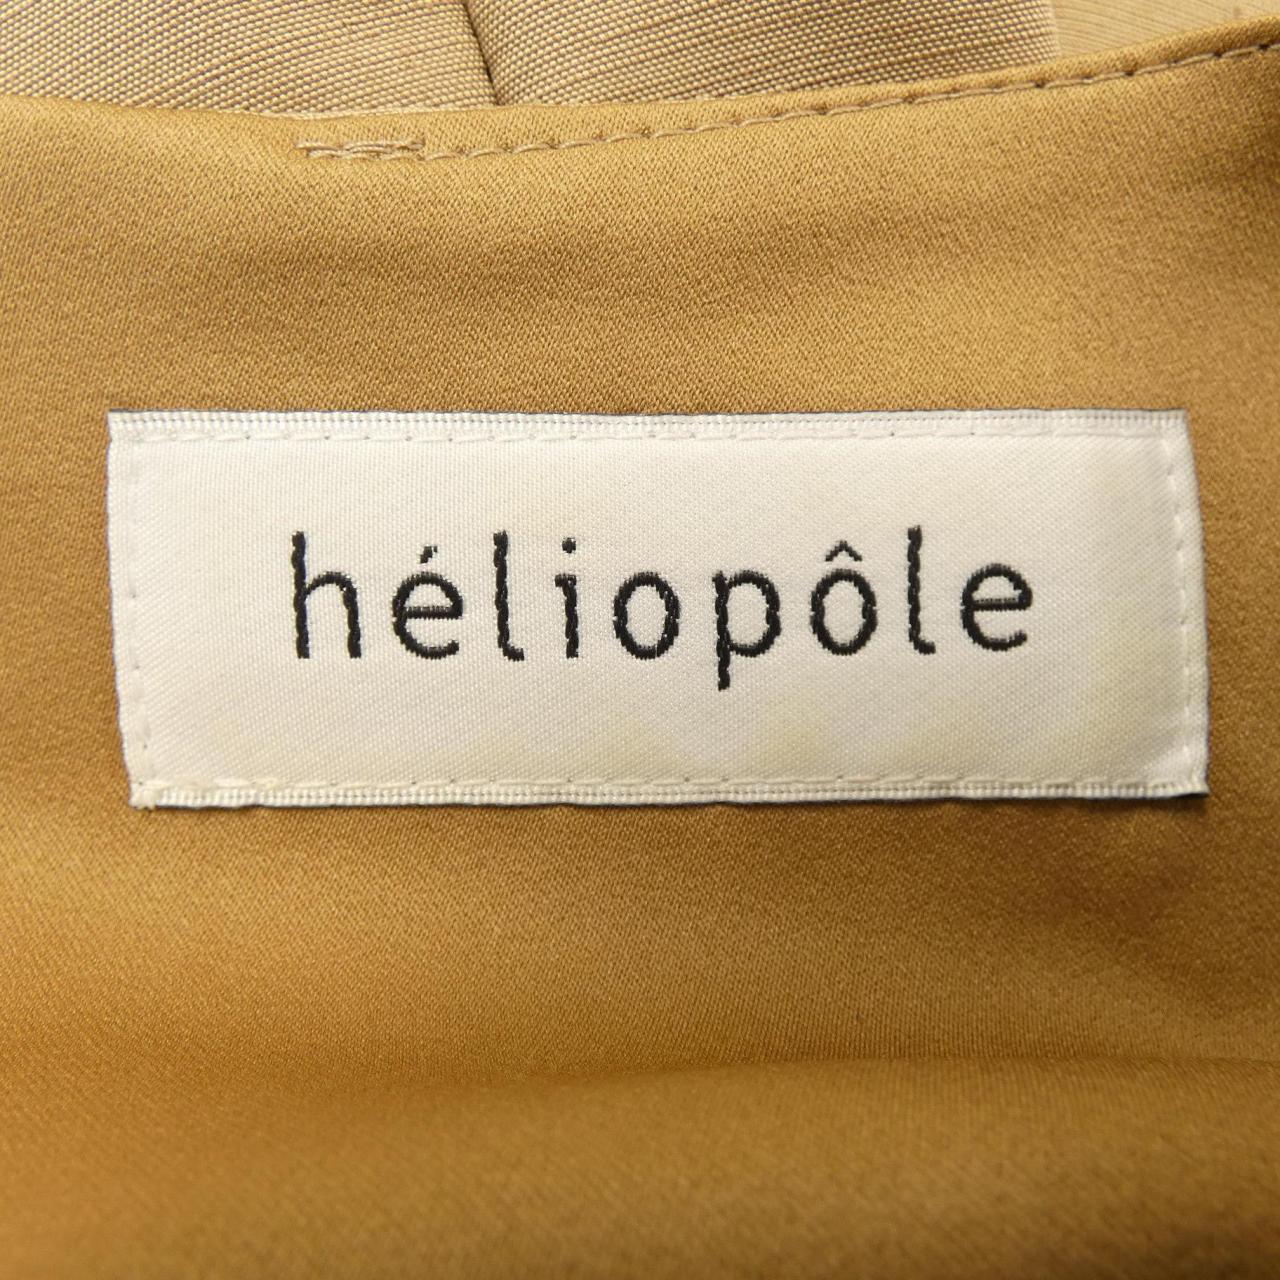 Heliopole one piece